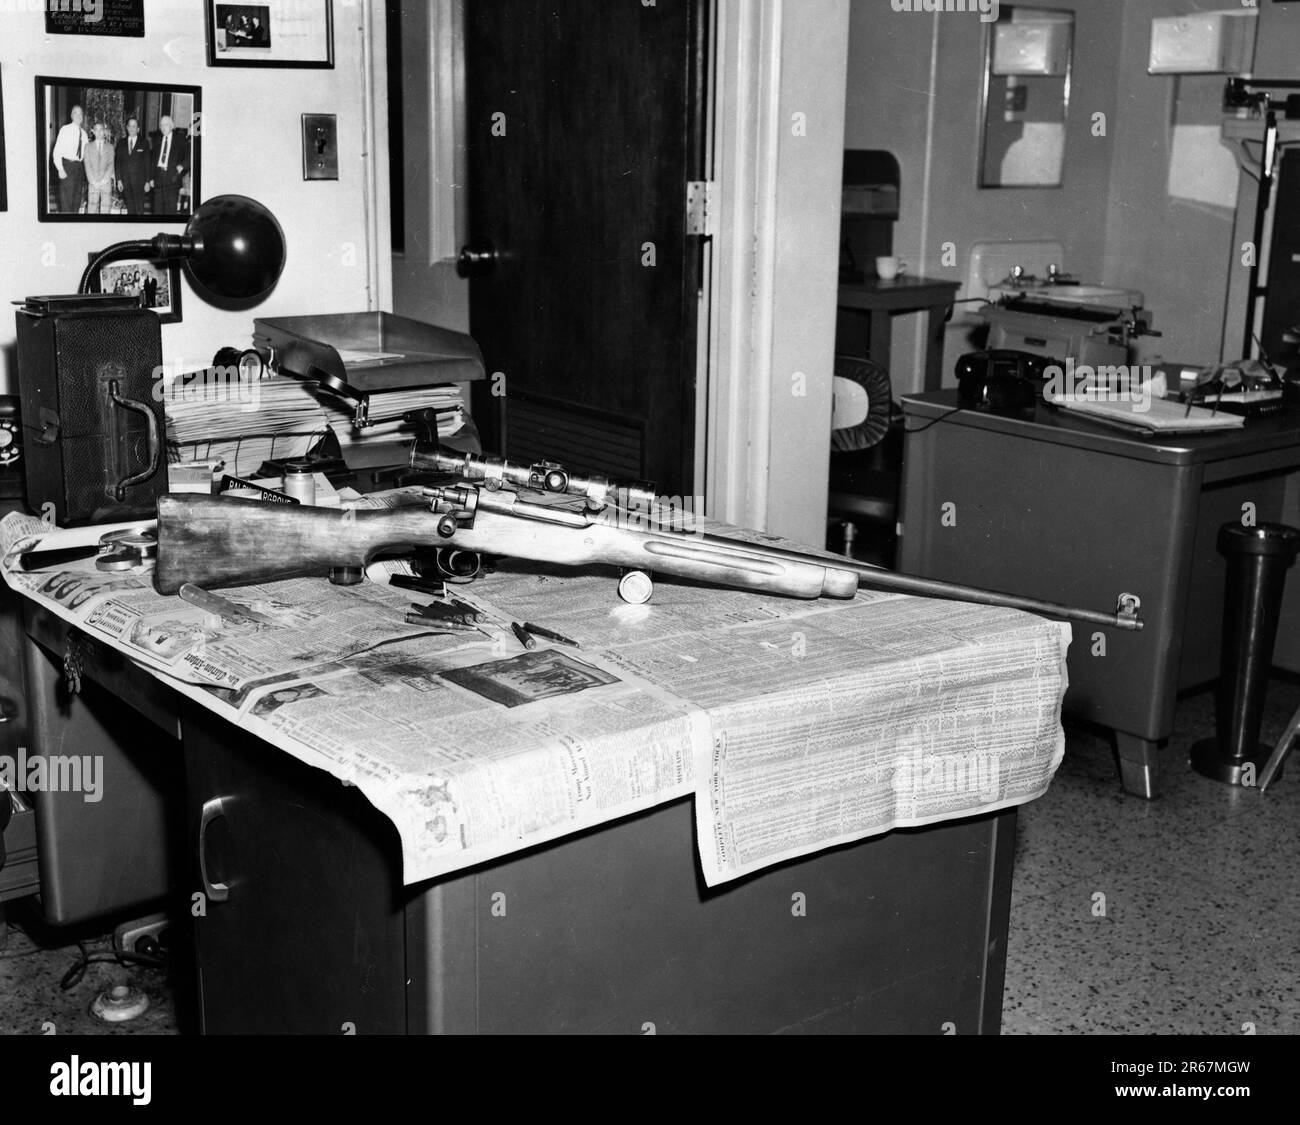 Il fucile utilizzato da De la Beckwith per assassinare Evers. 1963. Fucile che uccise Medgar Evers. Impronte latenti localizzate sulla vista telescopica. Medgar è stato sparato da Delta Drive, Jackson, Mississippi. Foto Stock